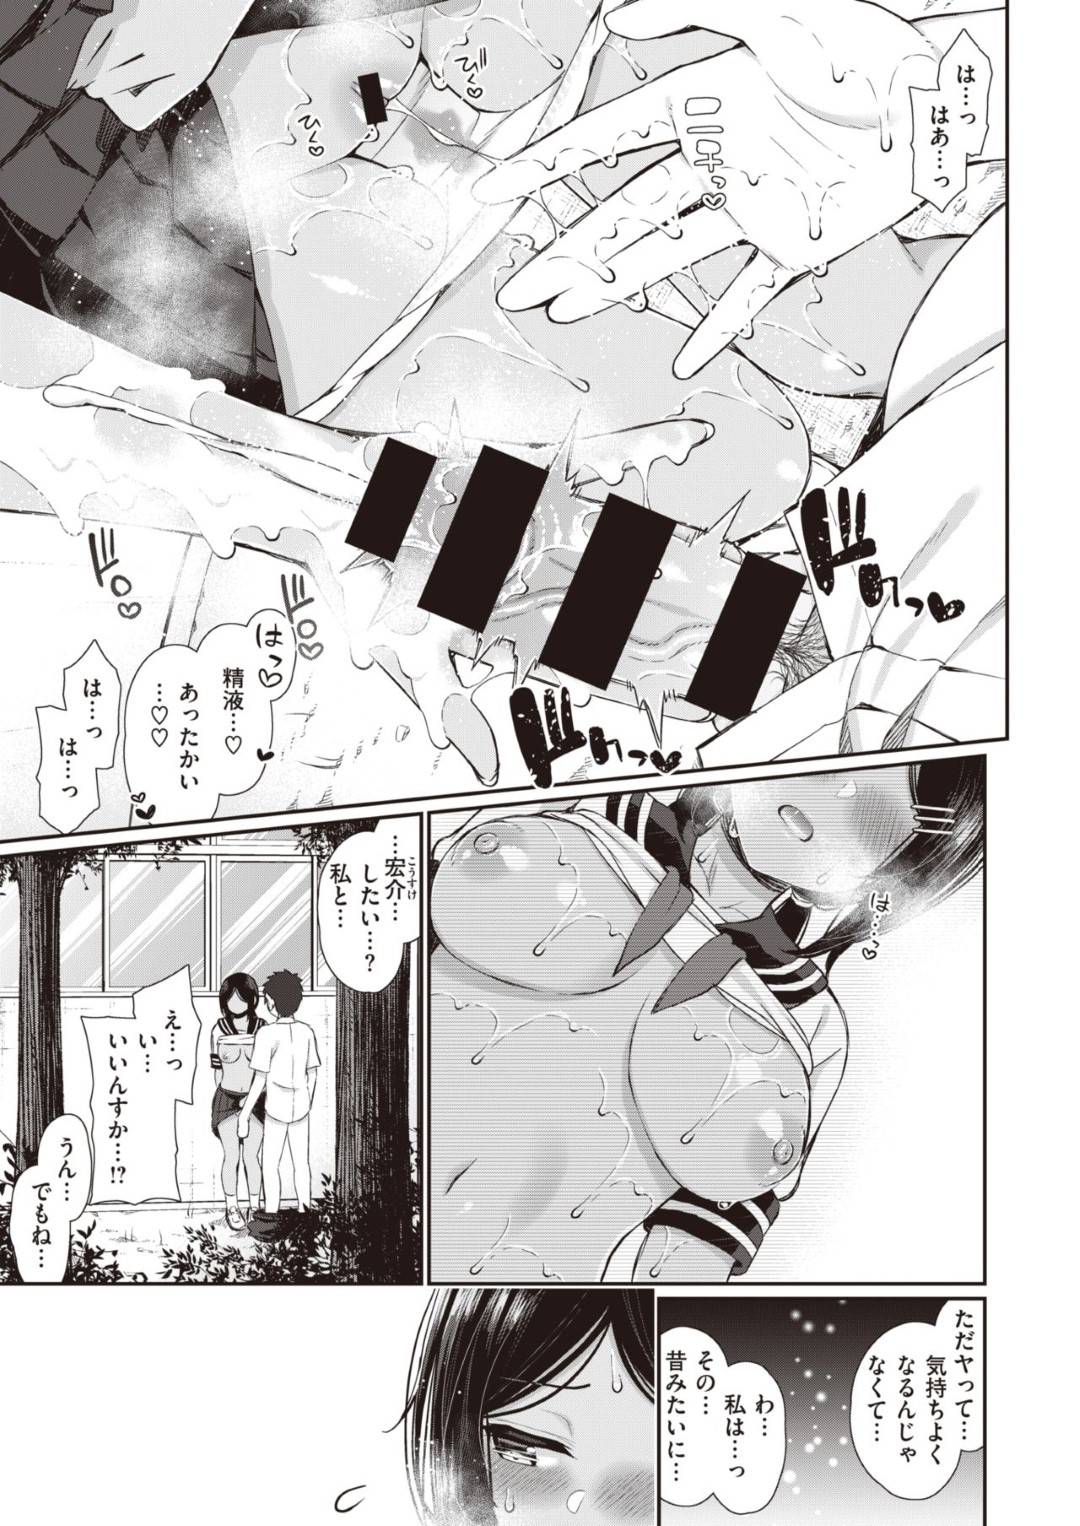 【エロ漫画】あきなは宏介とのエッチを思い出しながらオナニーで絶頂する【いづれ】